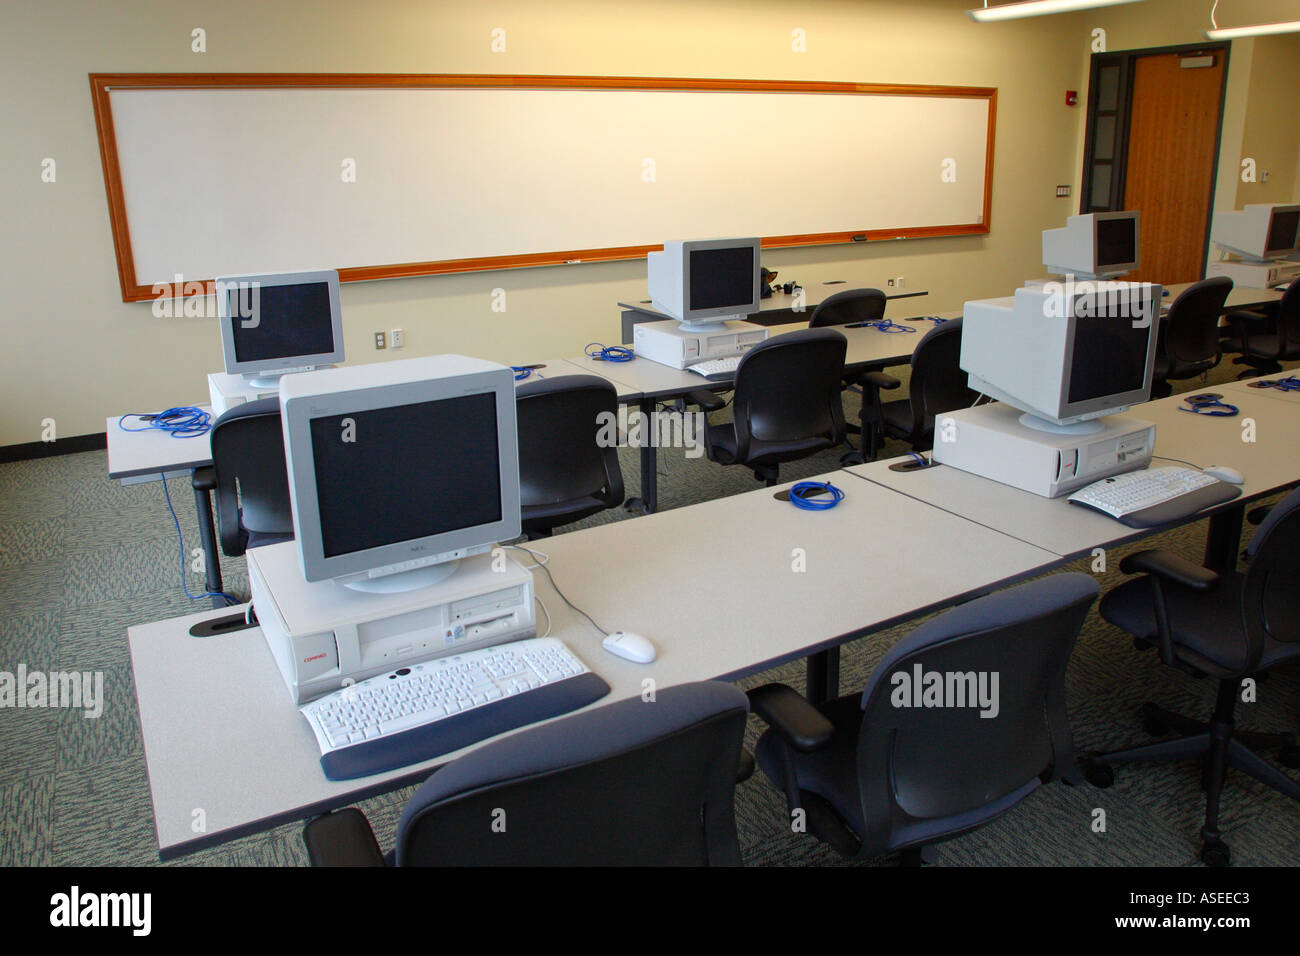 Centre de formation informatique Photo Stock - Alamy